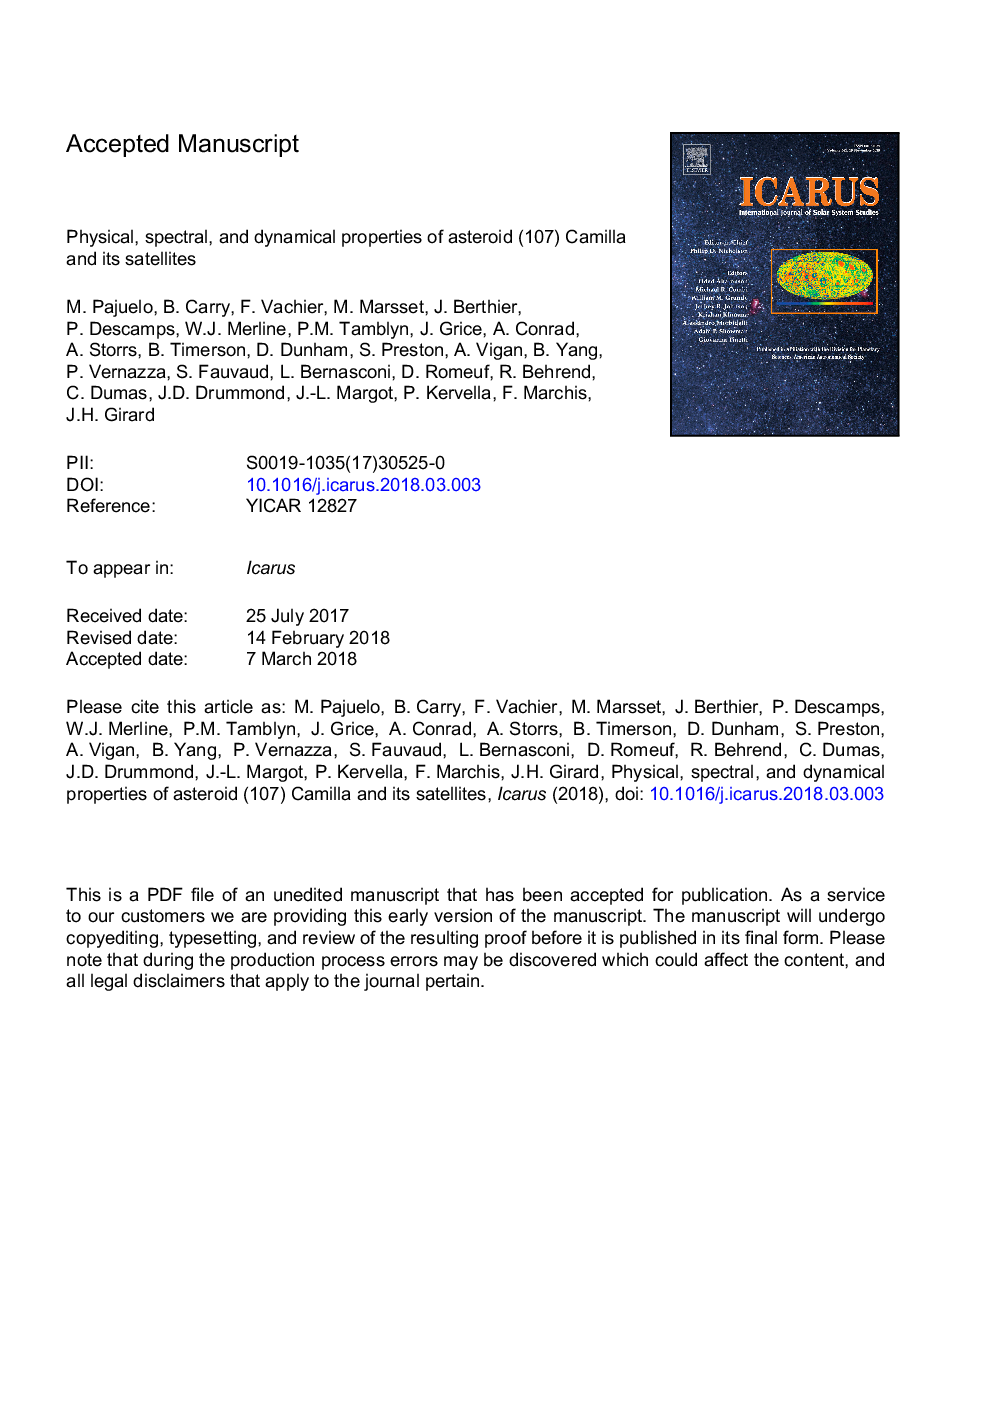 خواص فیزیکی، طیفی و دینامیکی سیارک (107) کامیلا و ماهواره های آن 